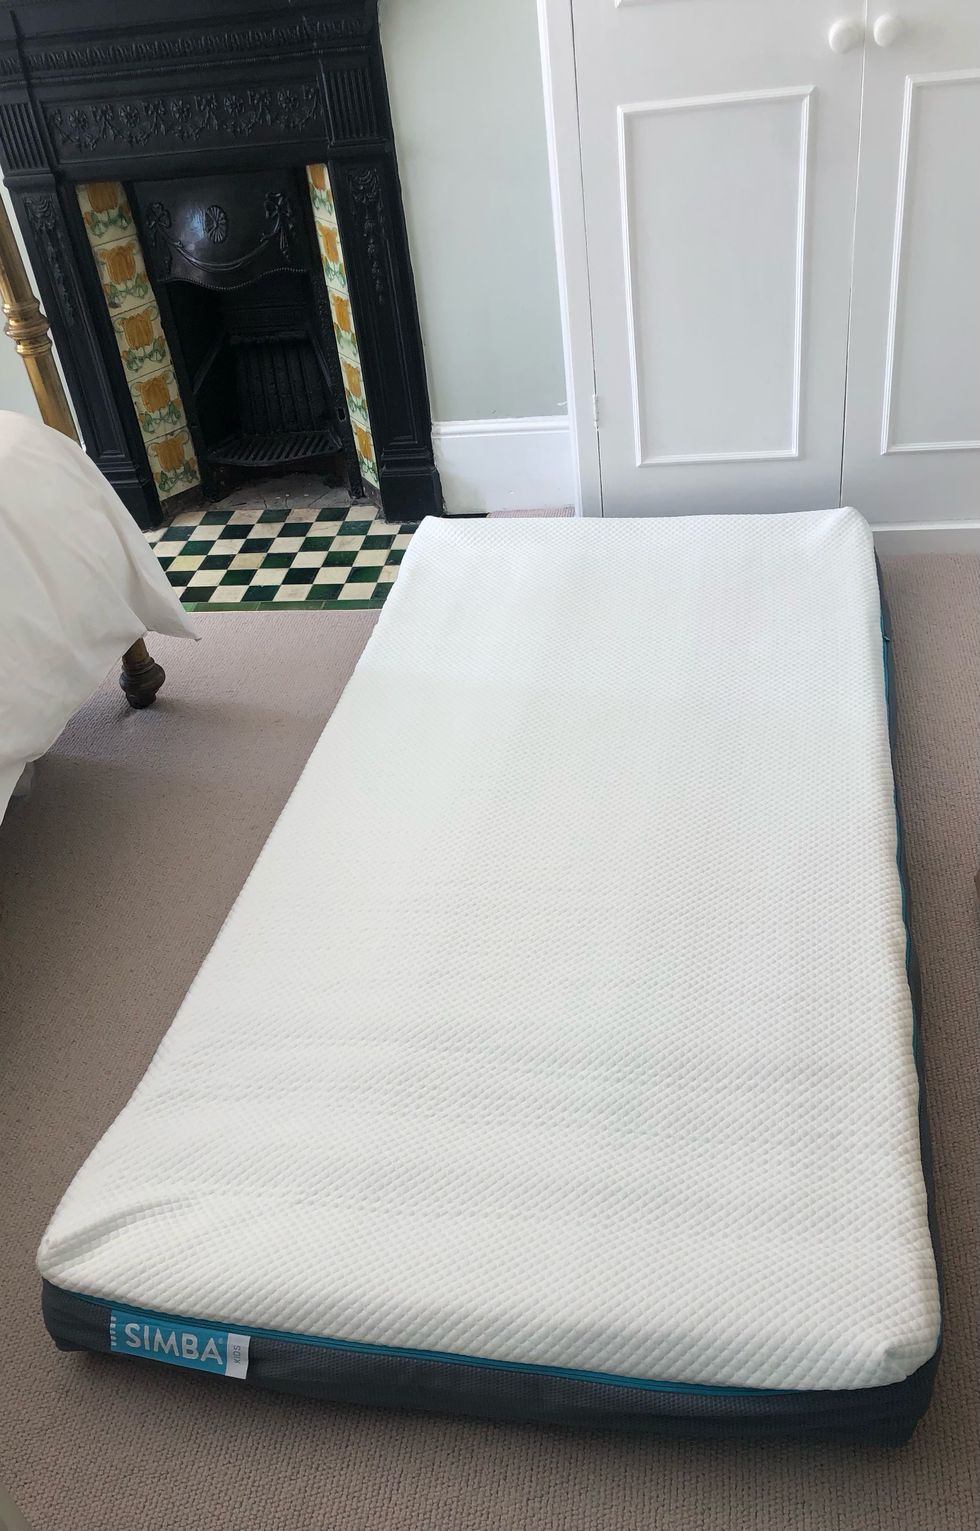 simba hybrid kids mattress, unpacked